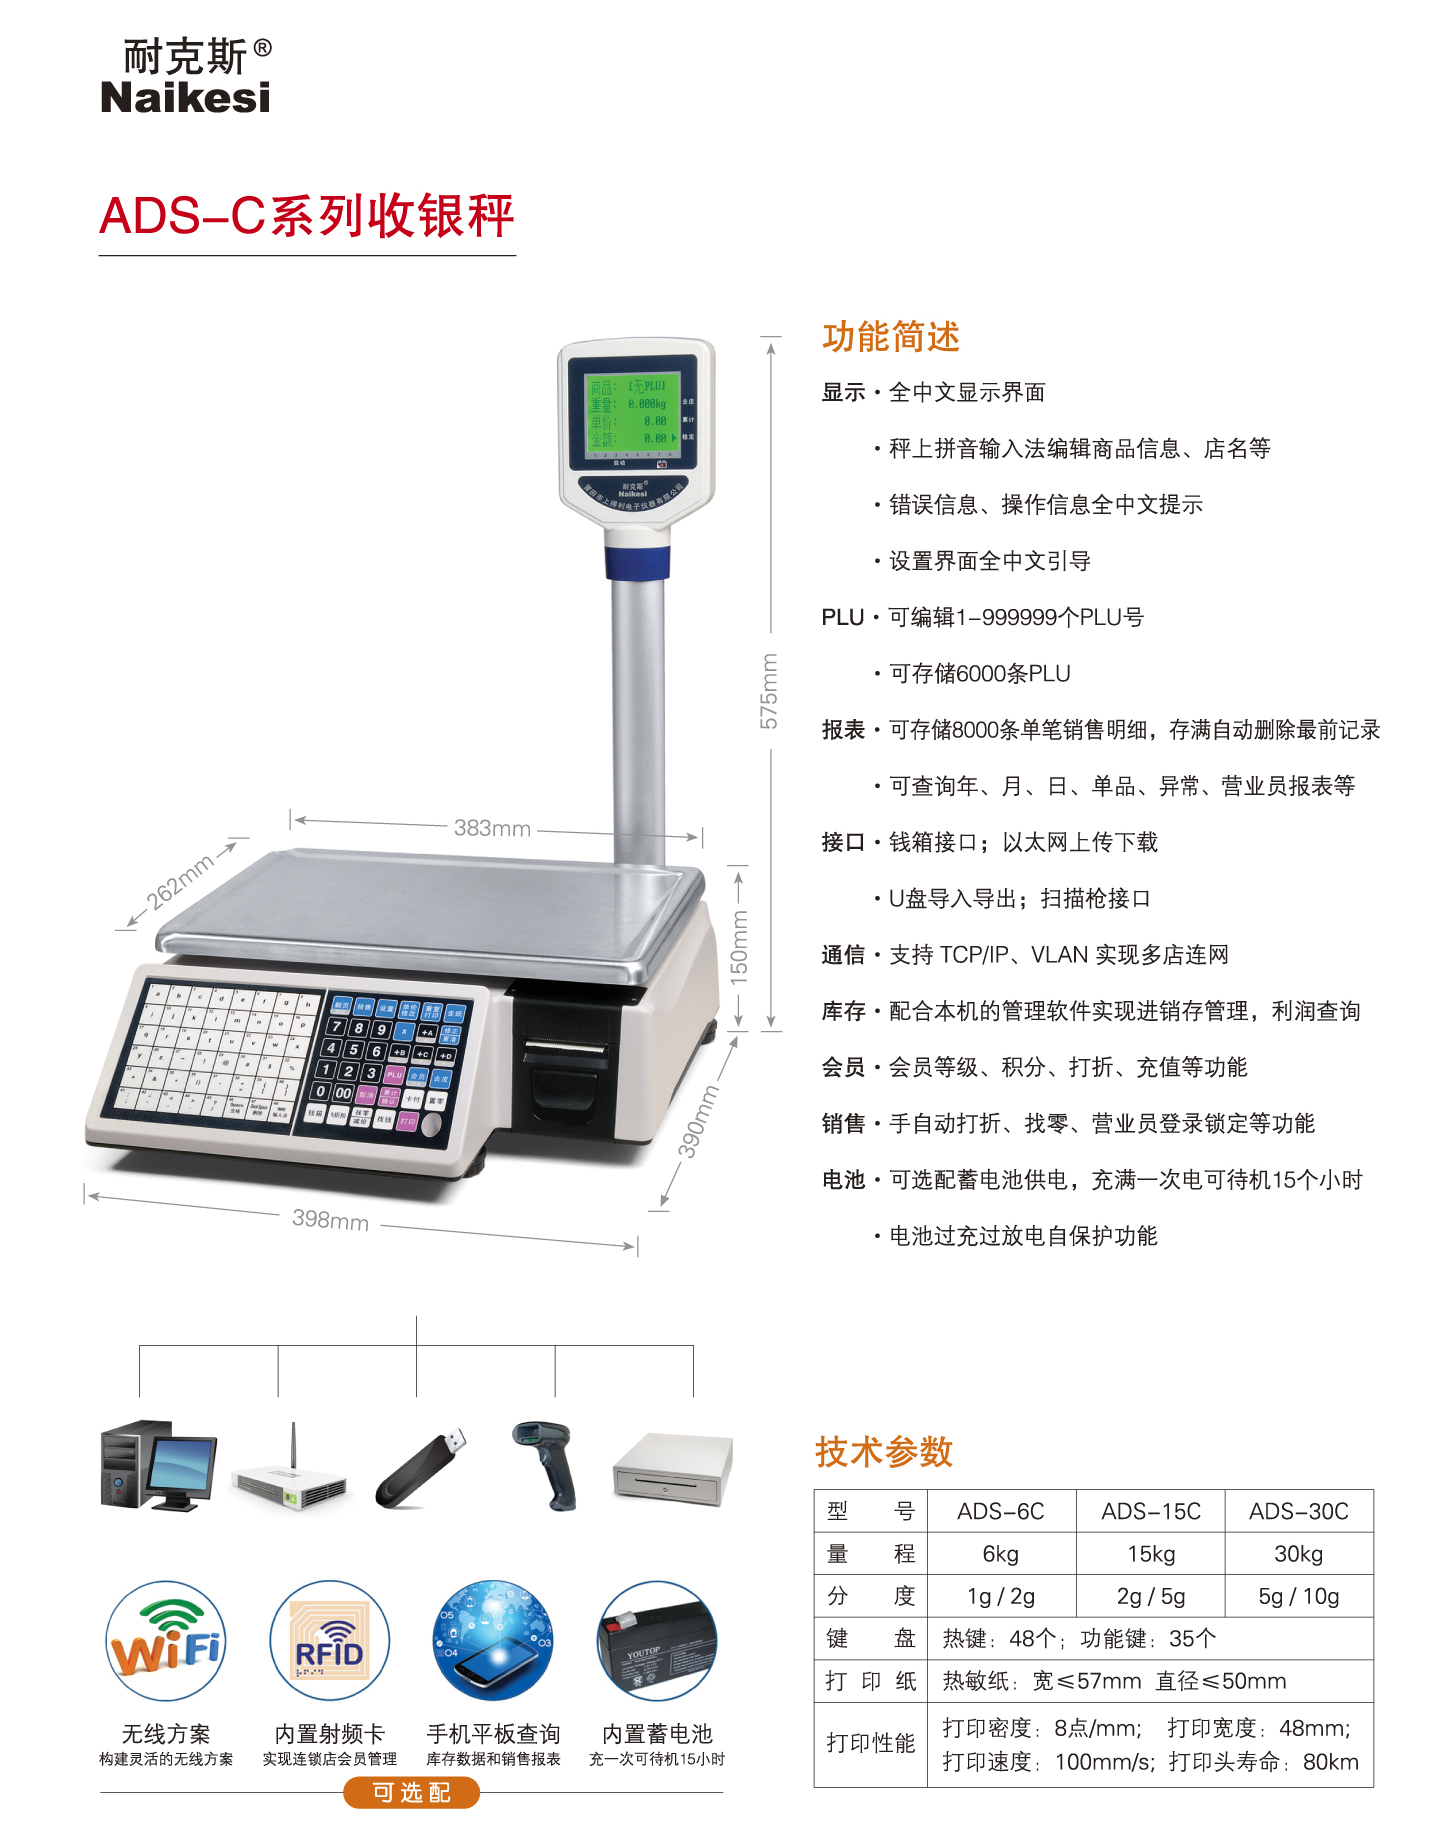 中文ADS-C.jpg